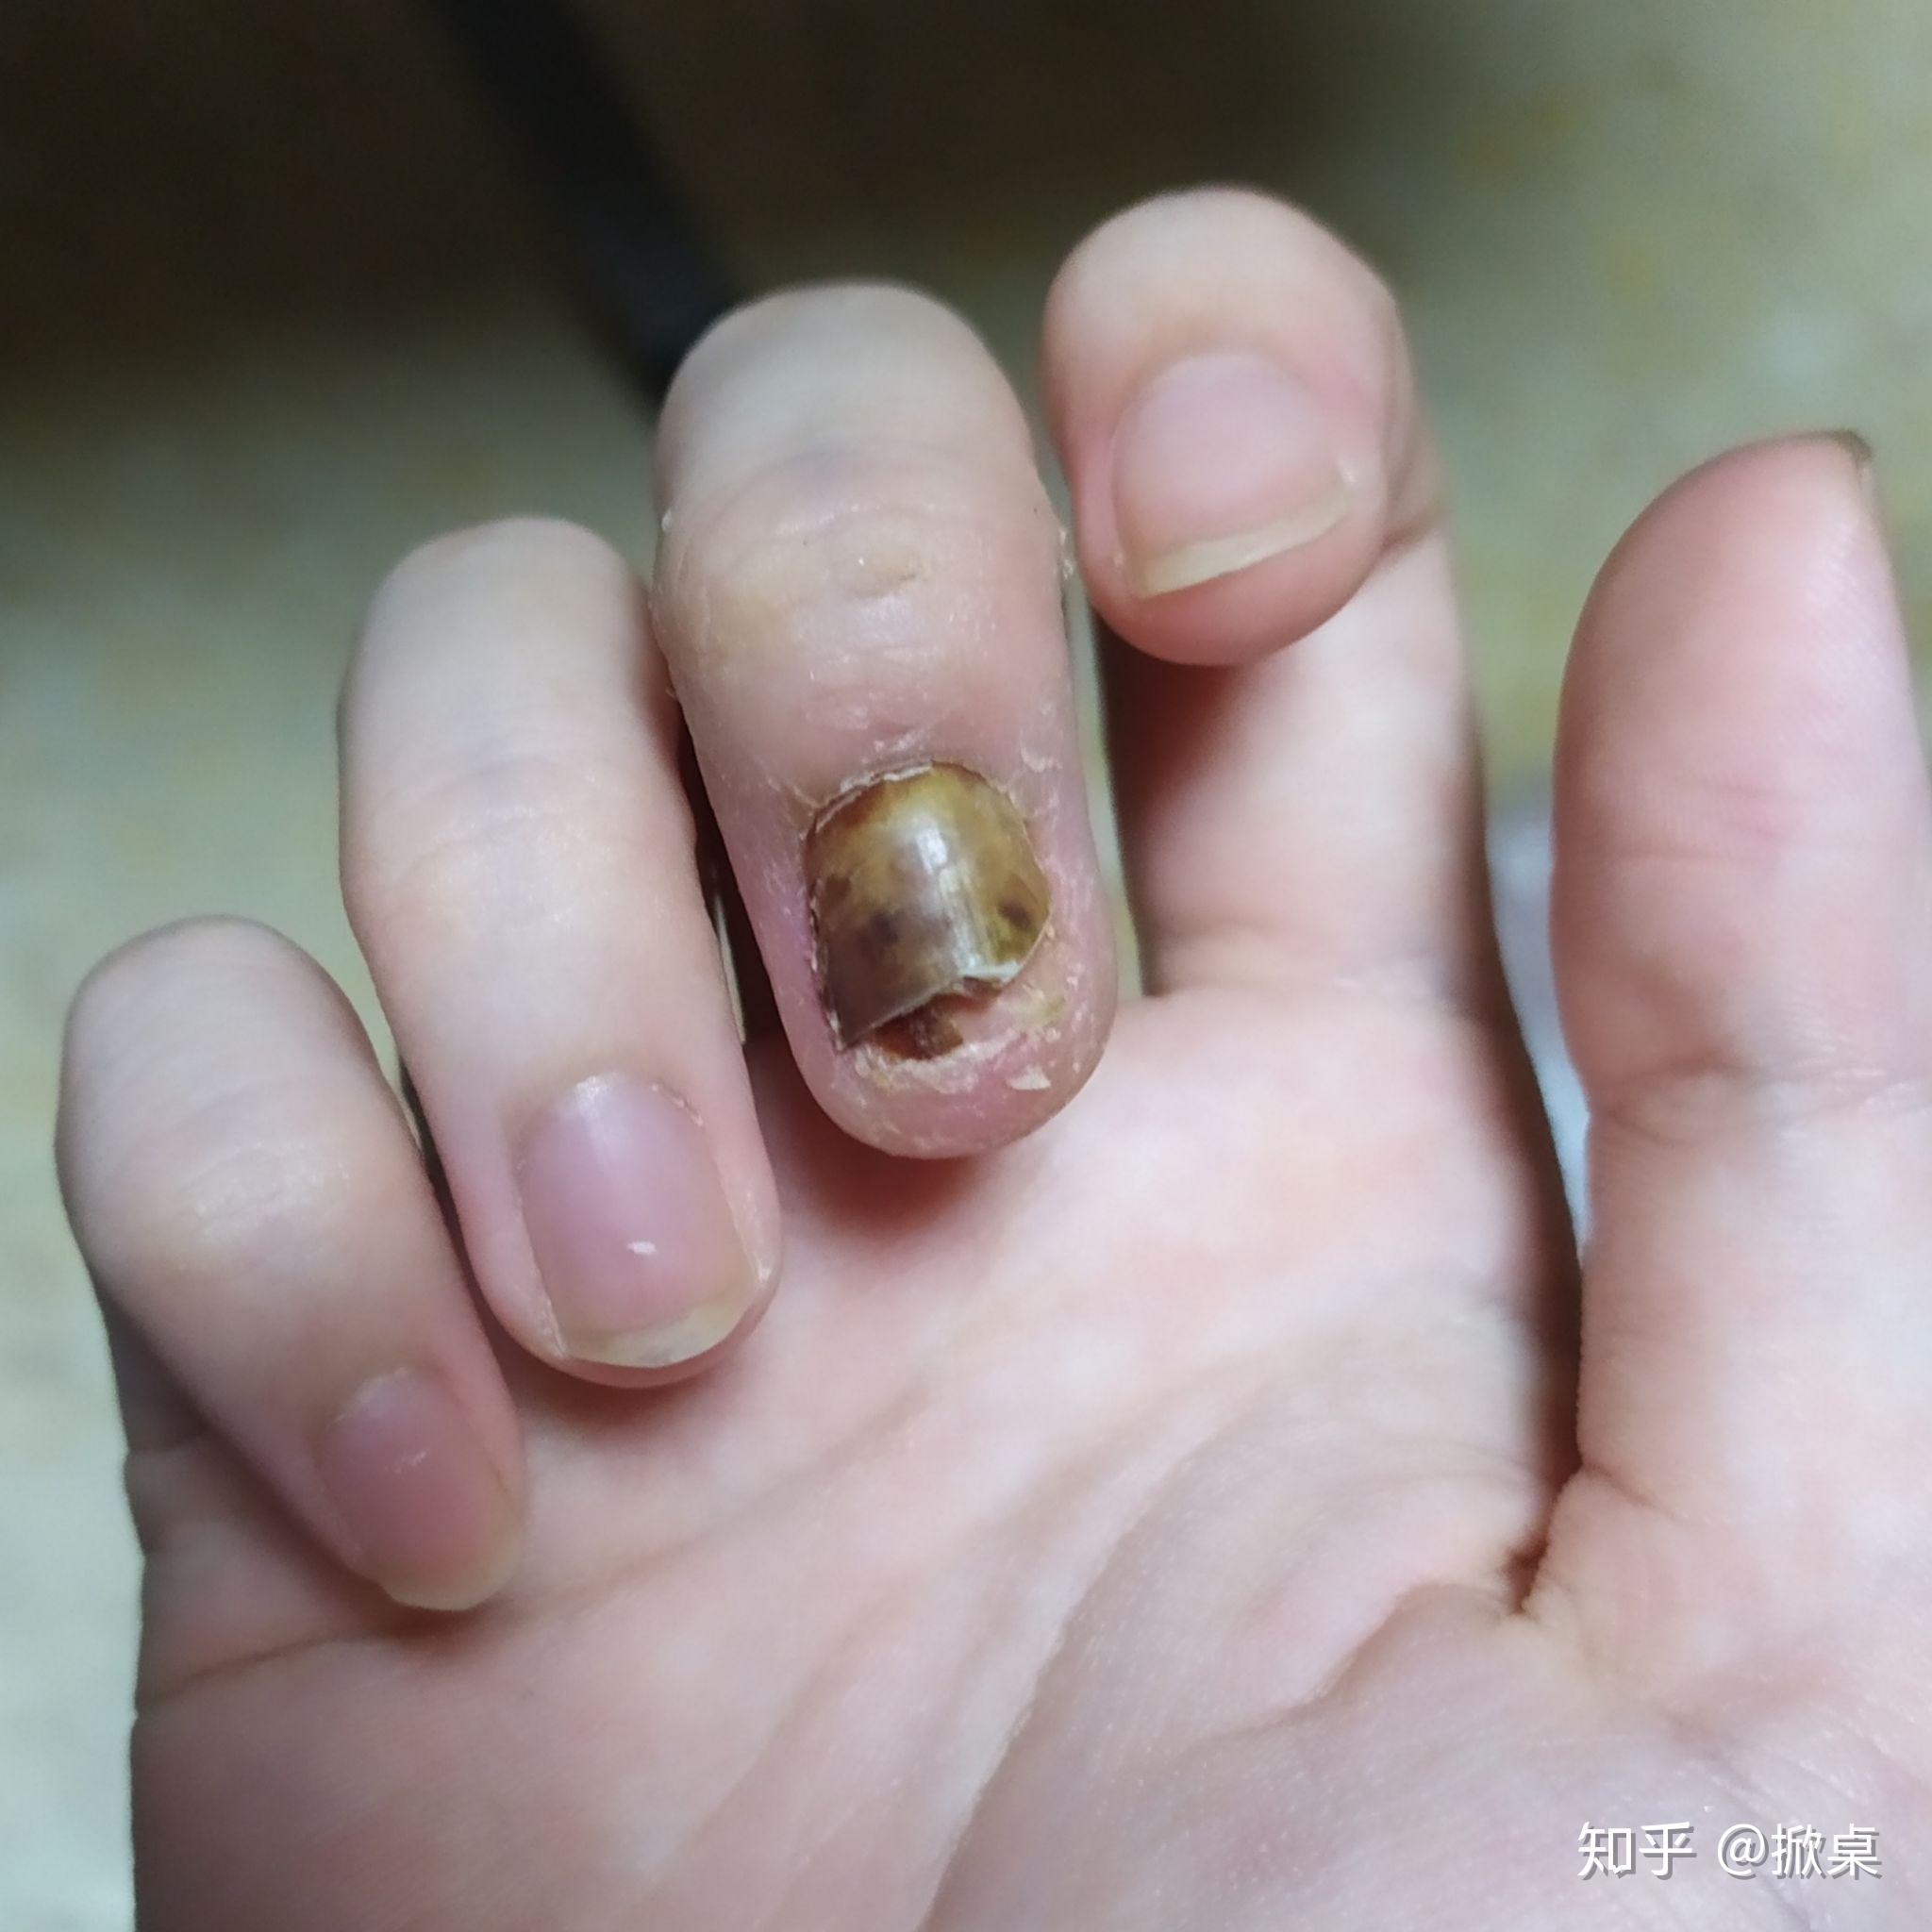 手指被门夹伤后的康复过程记录 